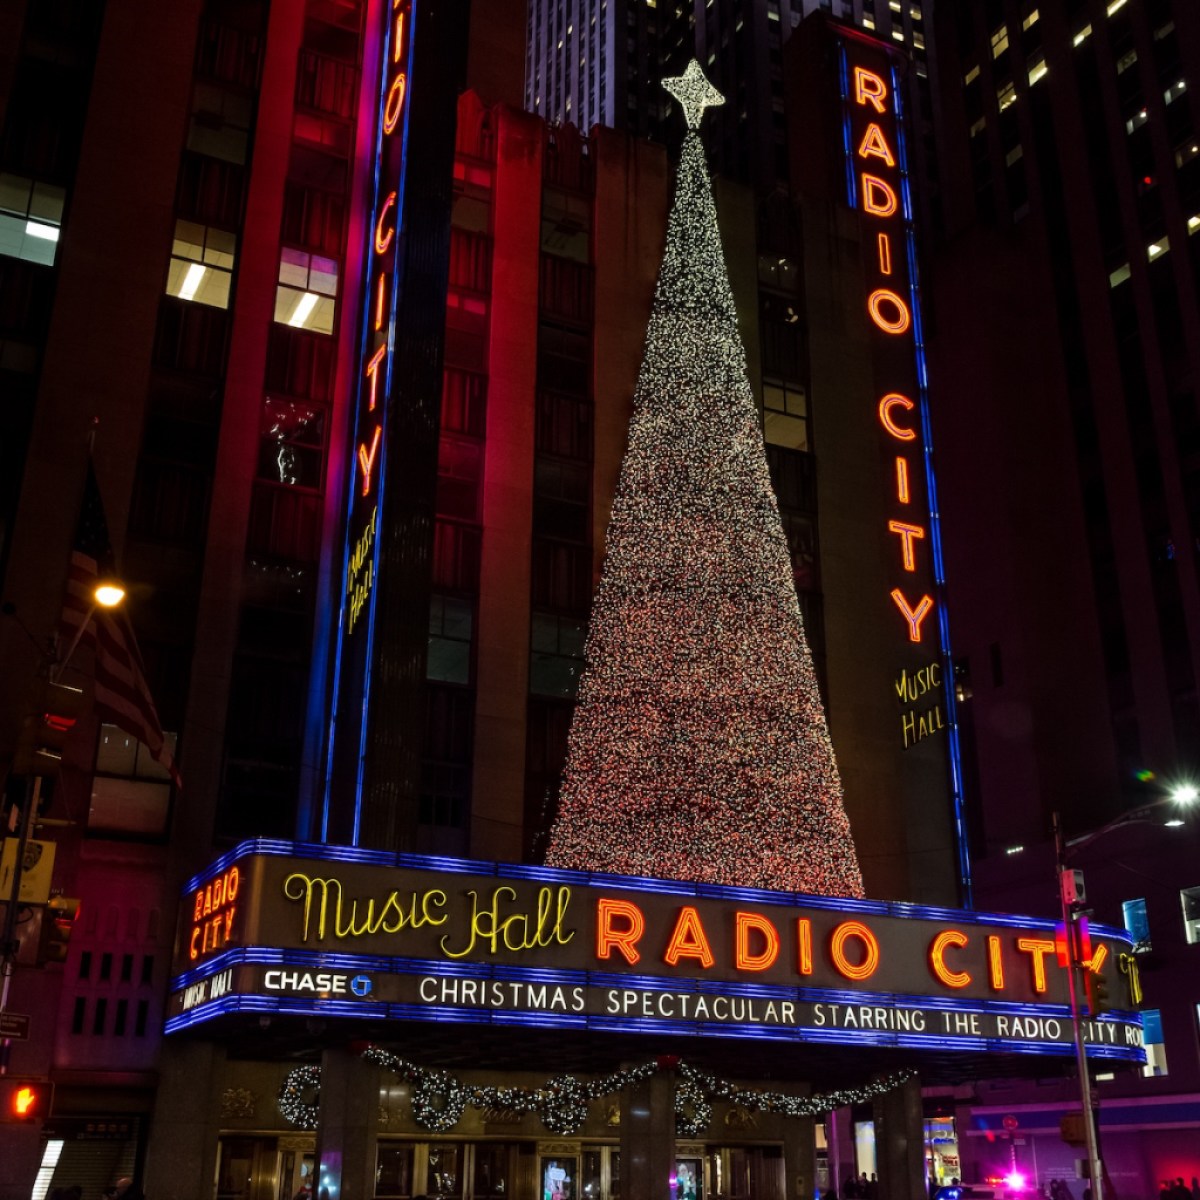 Radio City Music Hall during Christmas time